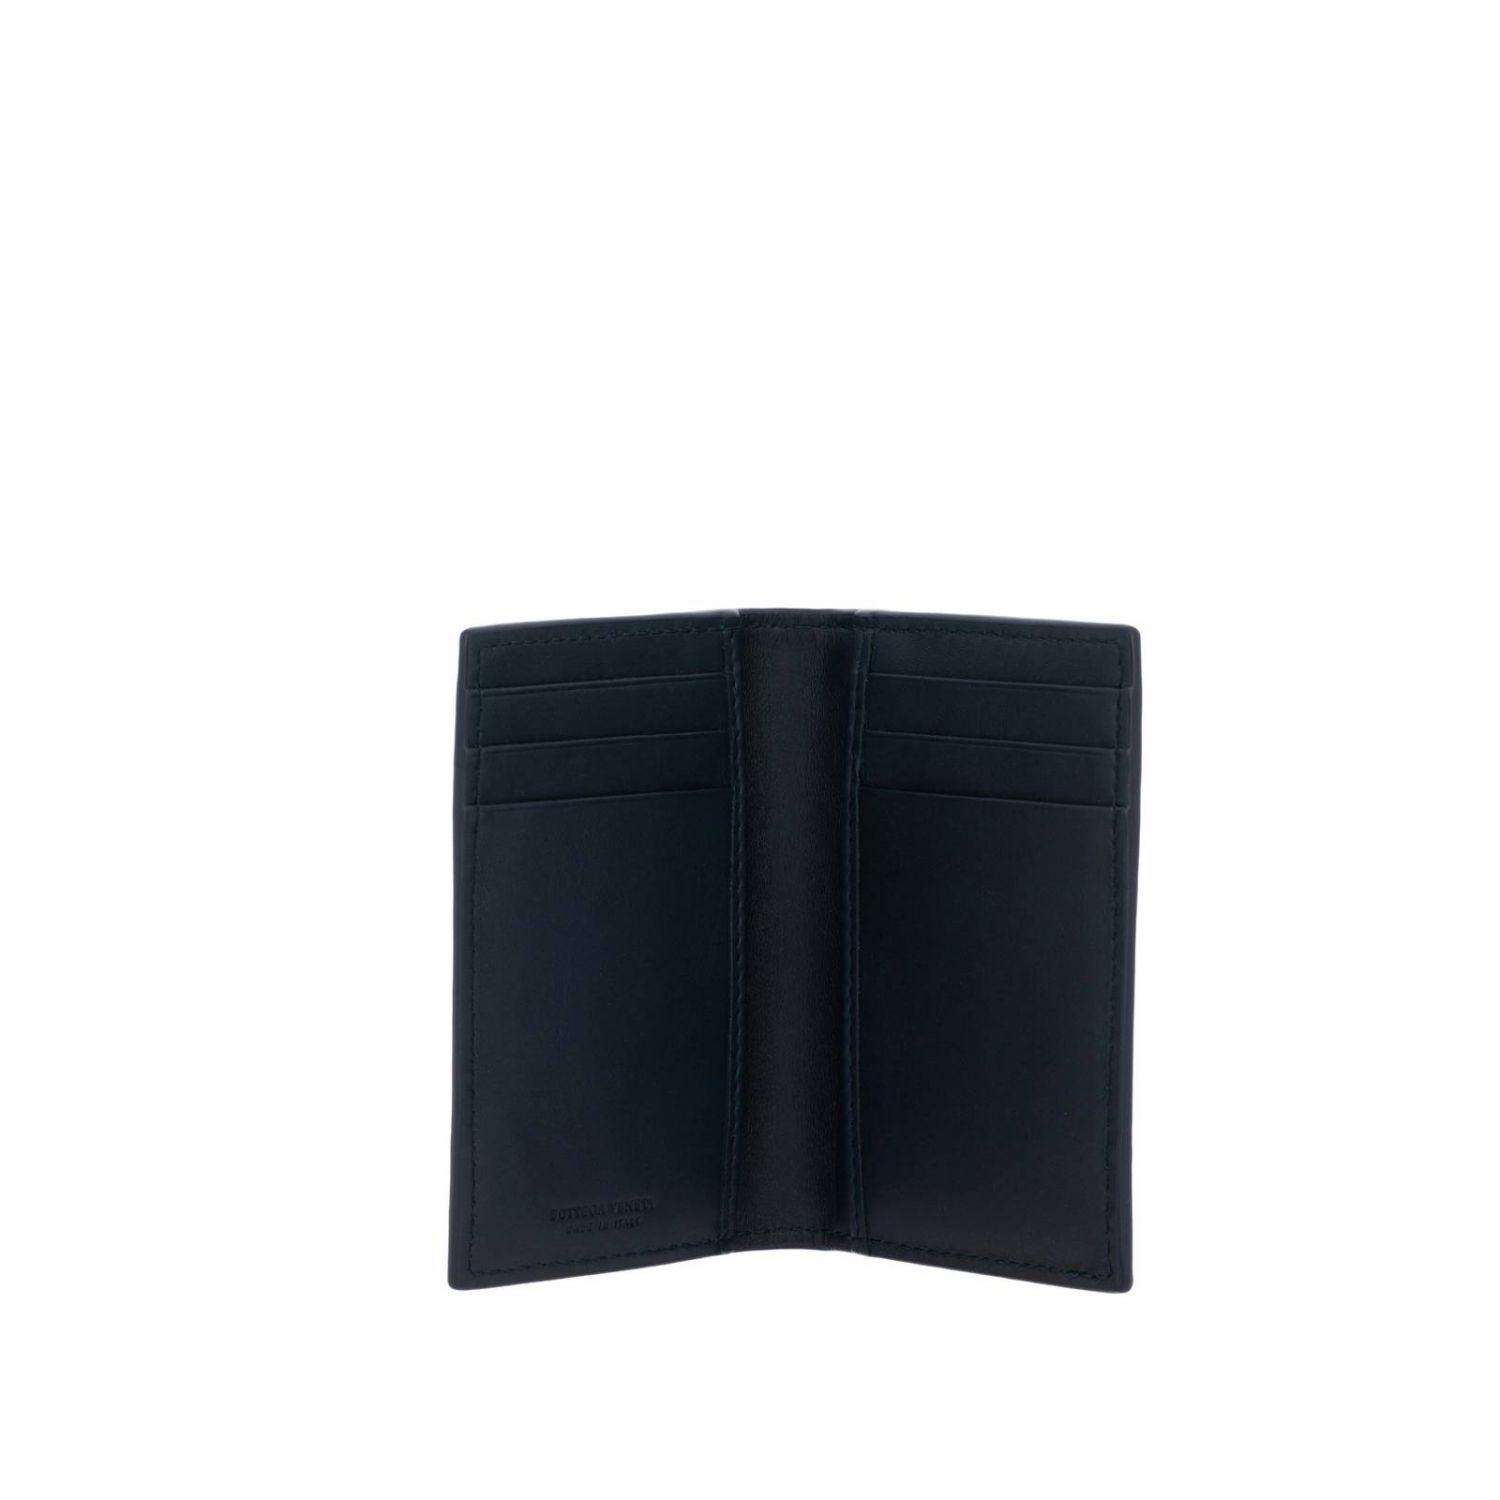 Bottega Veneta Outlet: card holder in woven leather - Blue | Bottega ...